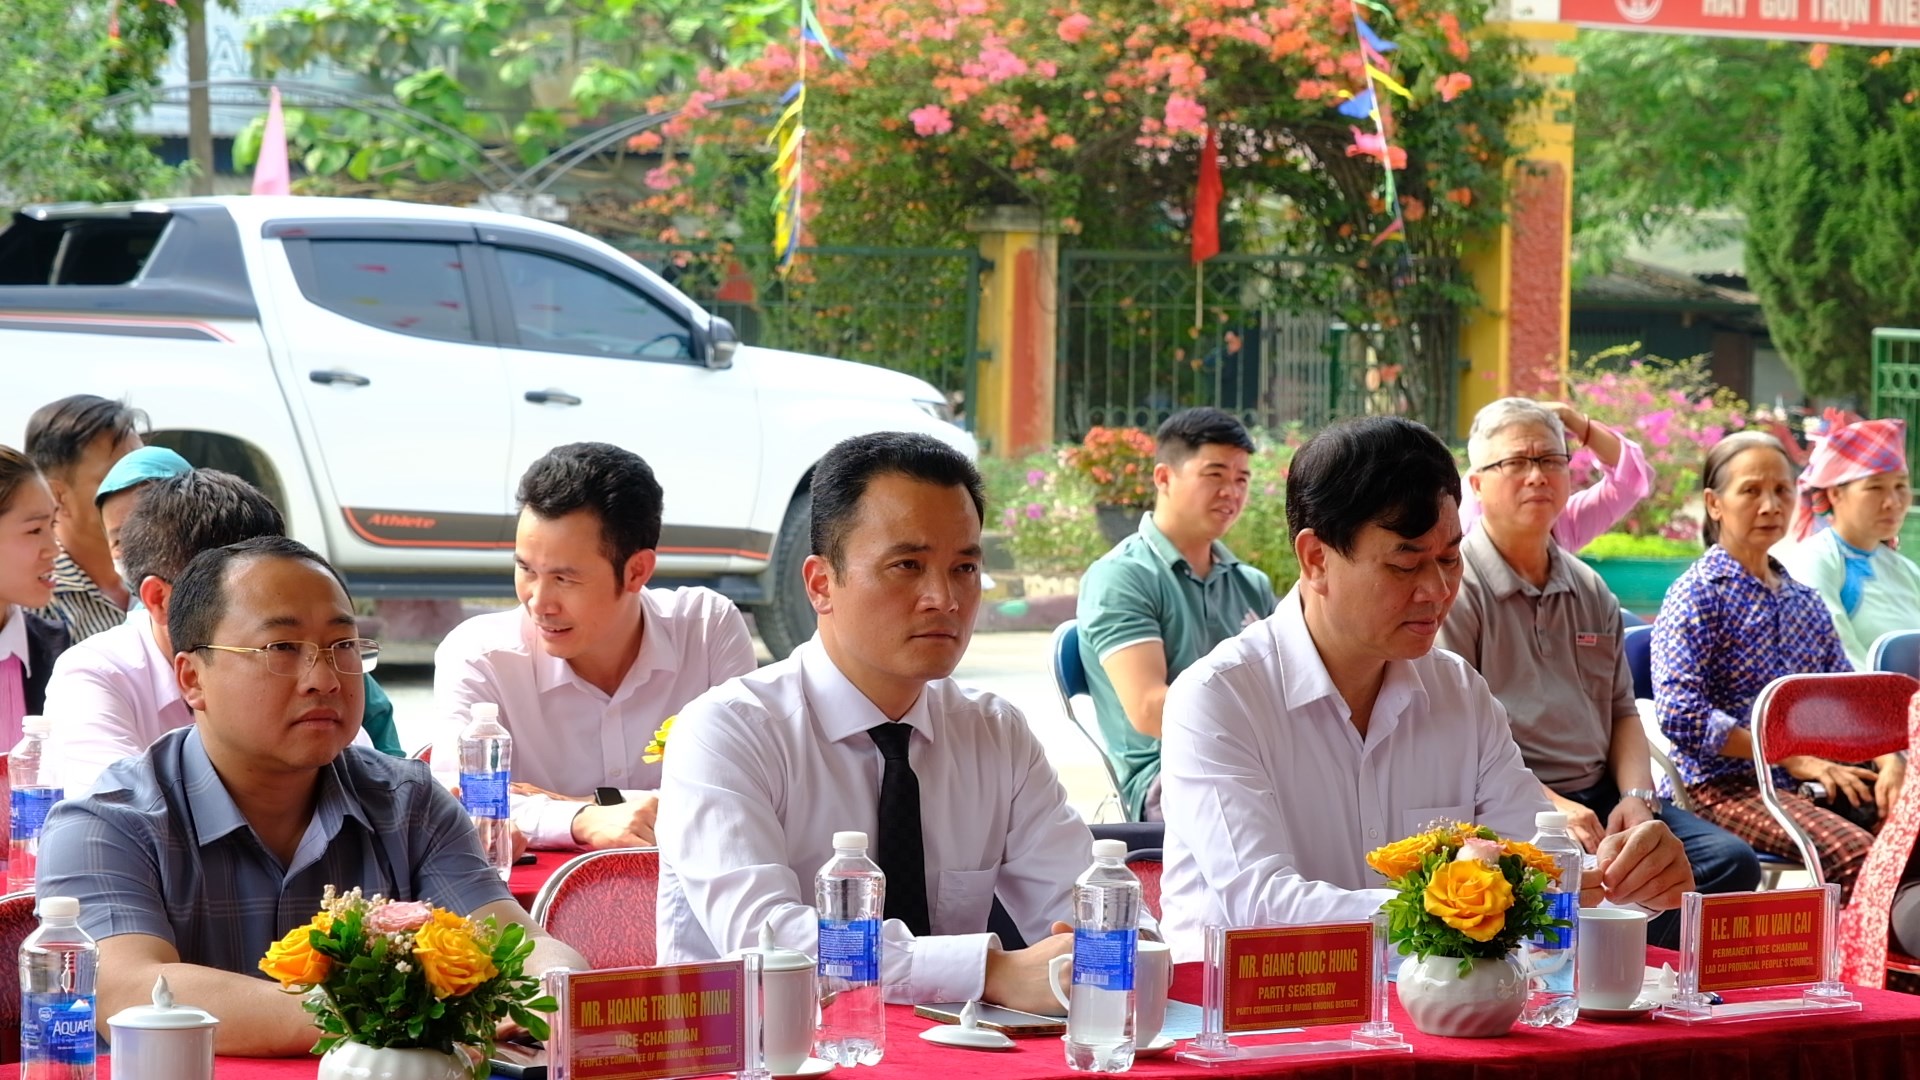 Trao tặng bếp ăn, nhà giáo dục thể chất cho Trường Mầm non vùng cao Lào Cai - Ảnh 1.